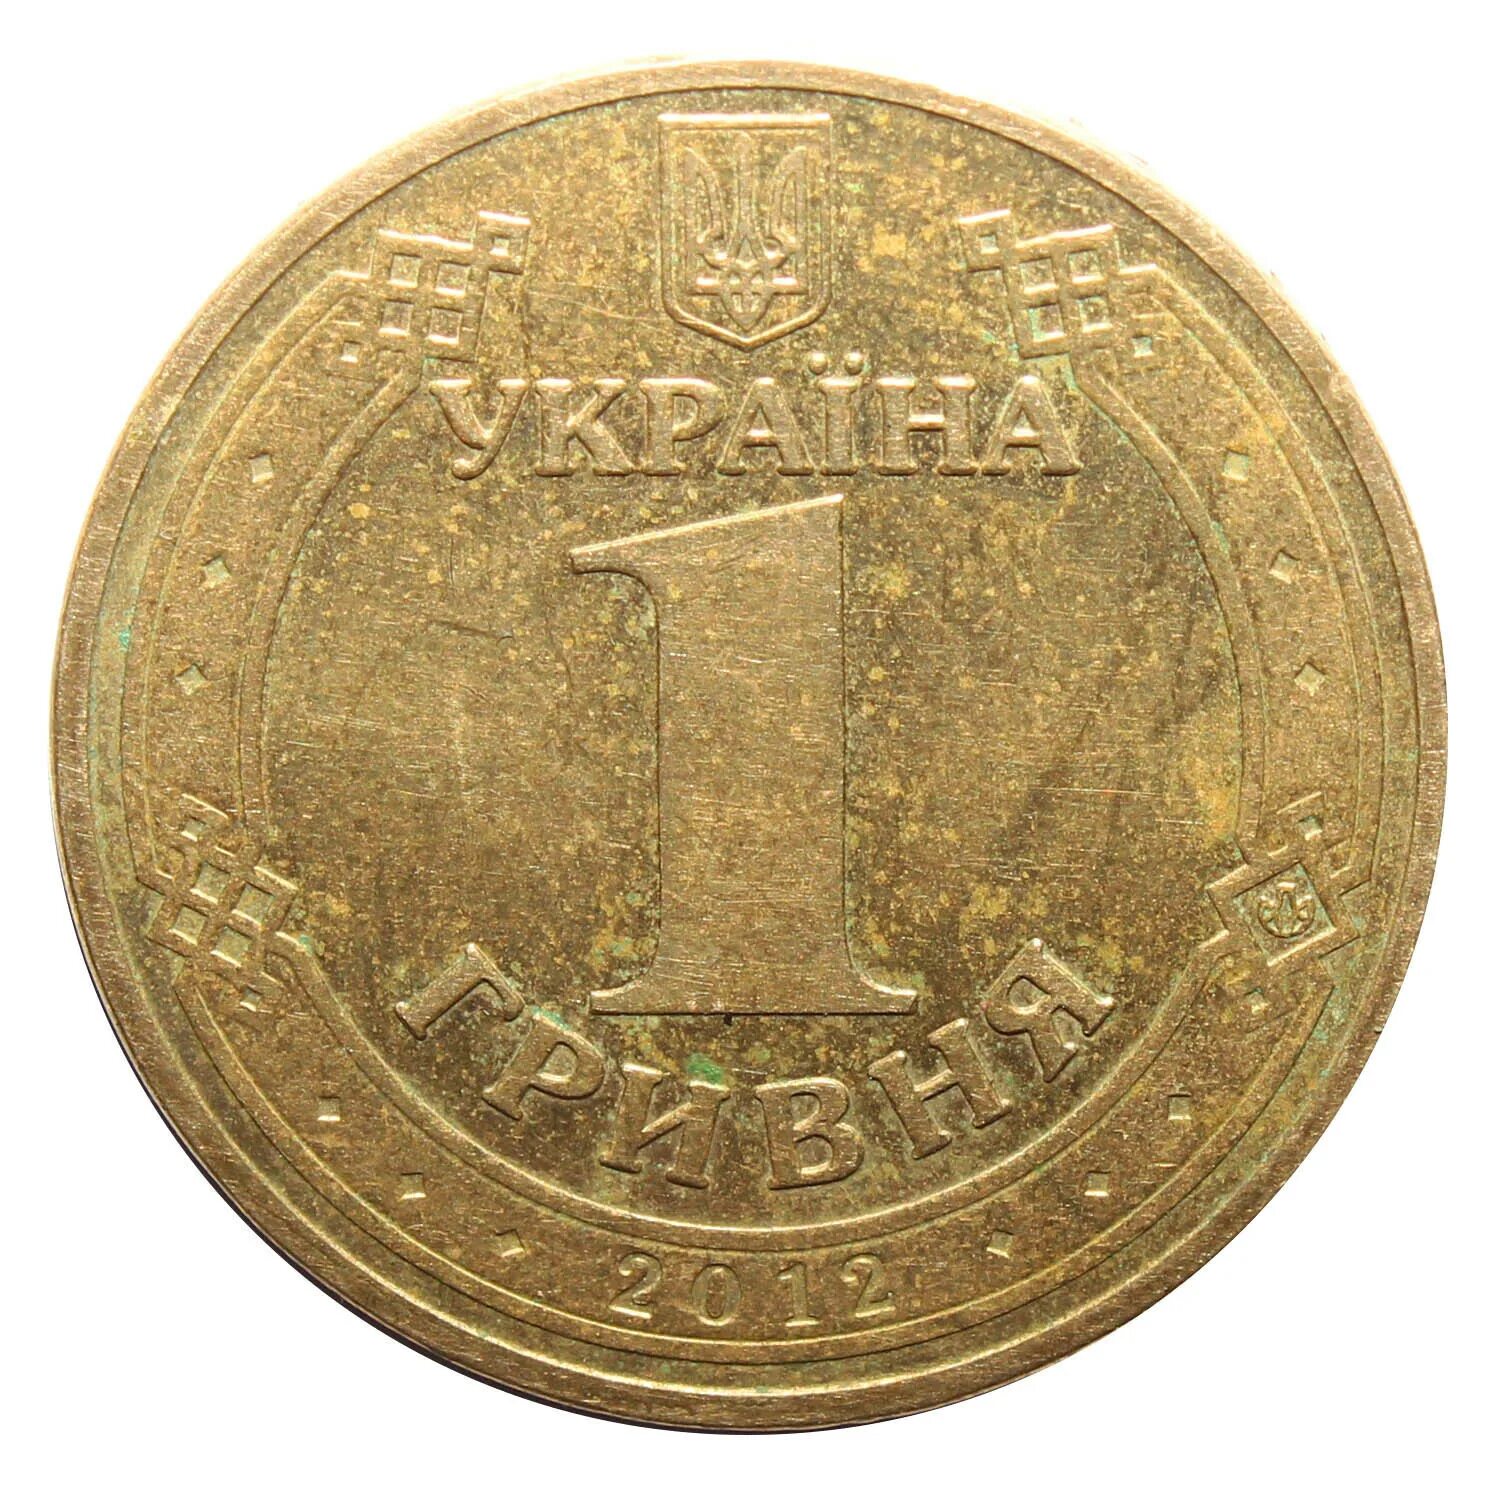 1 Гривна 2012. 1 Гривна монета. Монеты гривны евро 2012. Монета 1 гривен 2012 года.